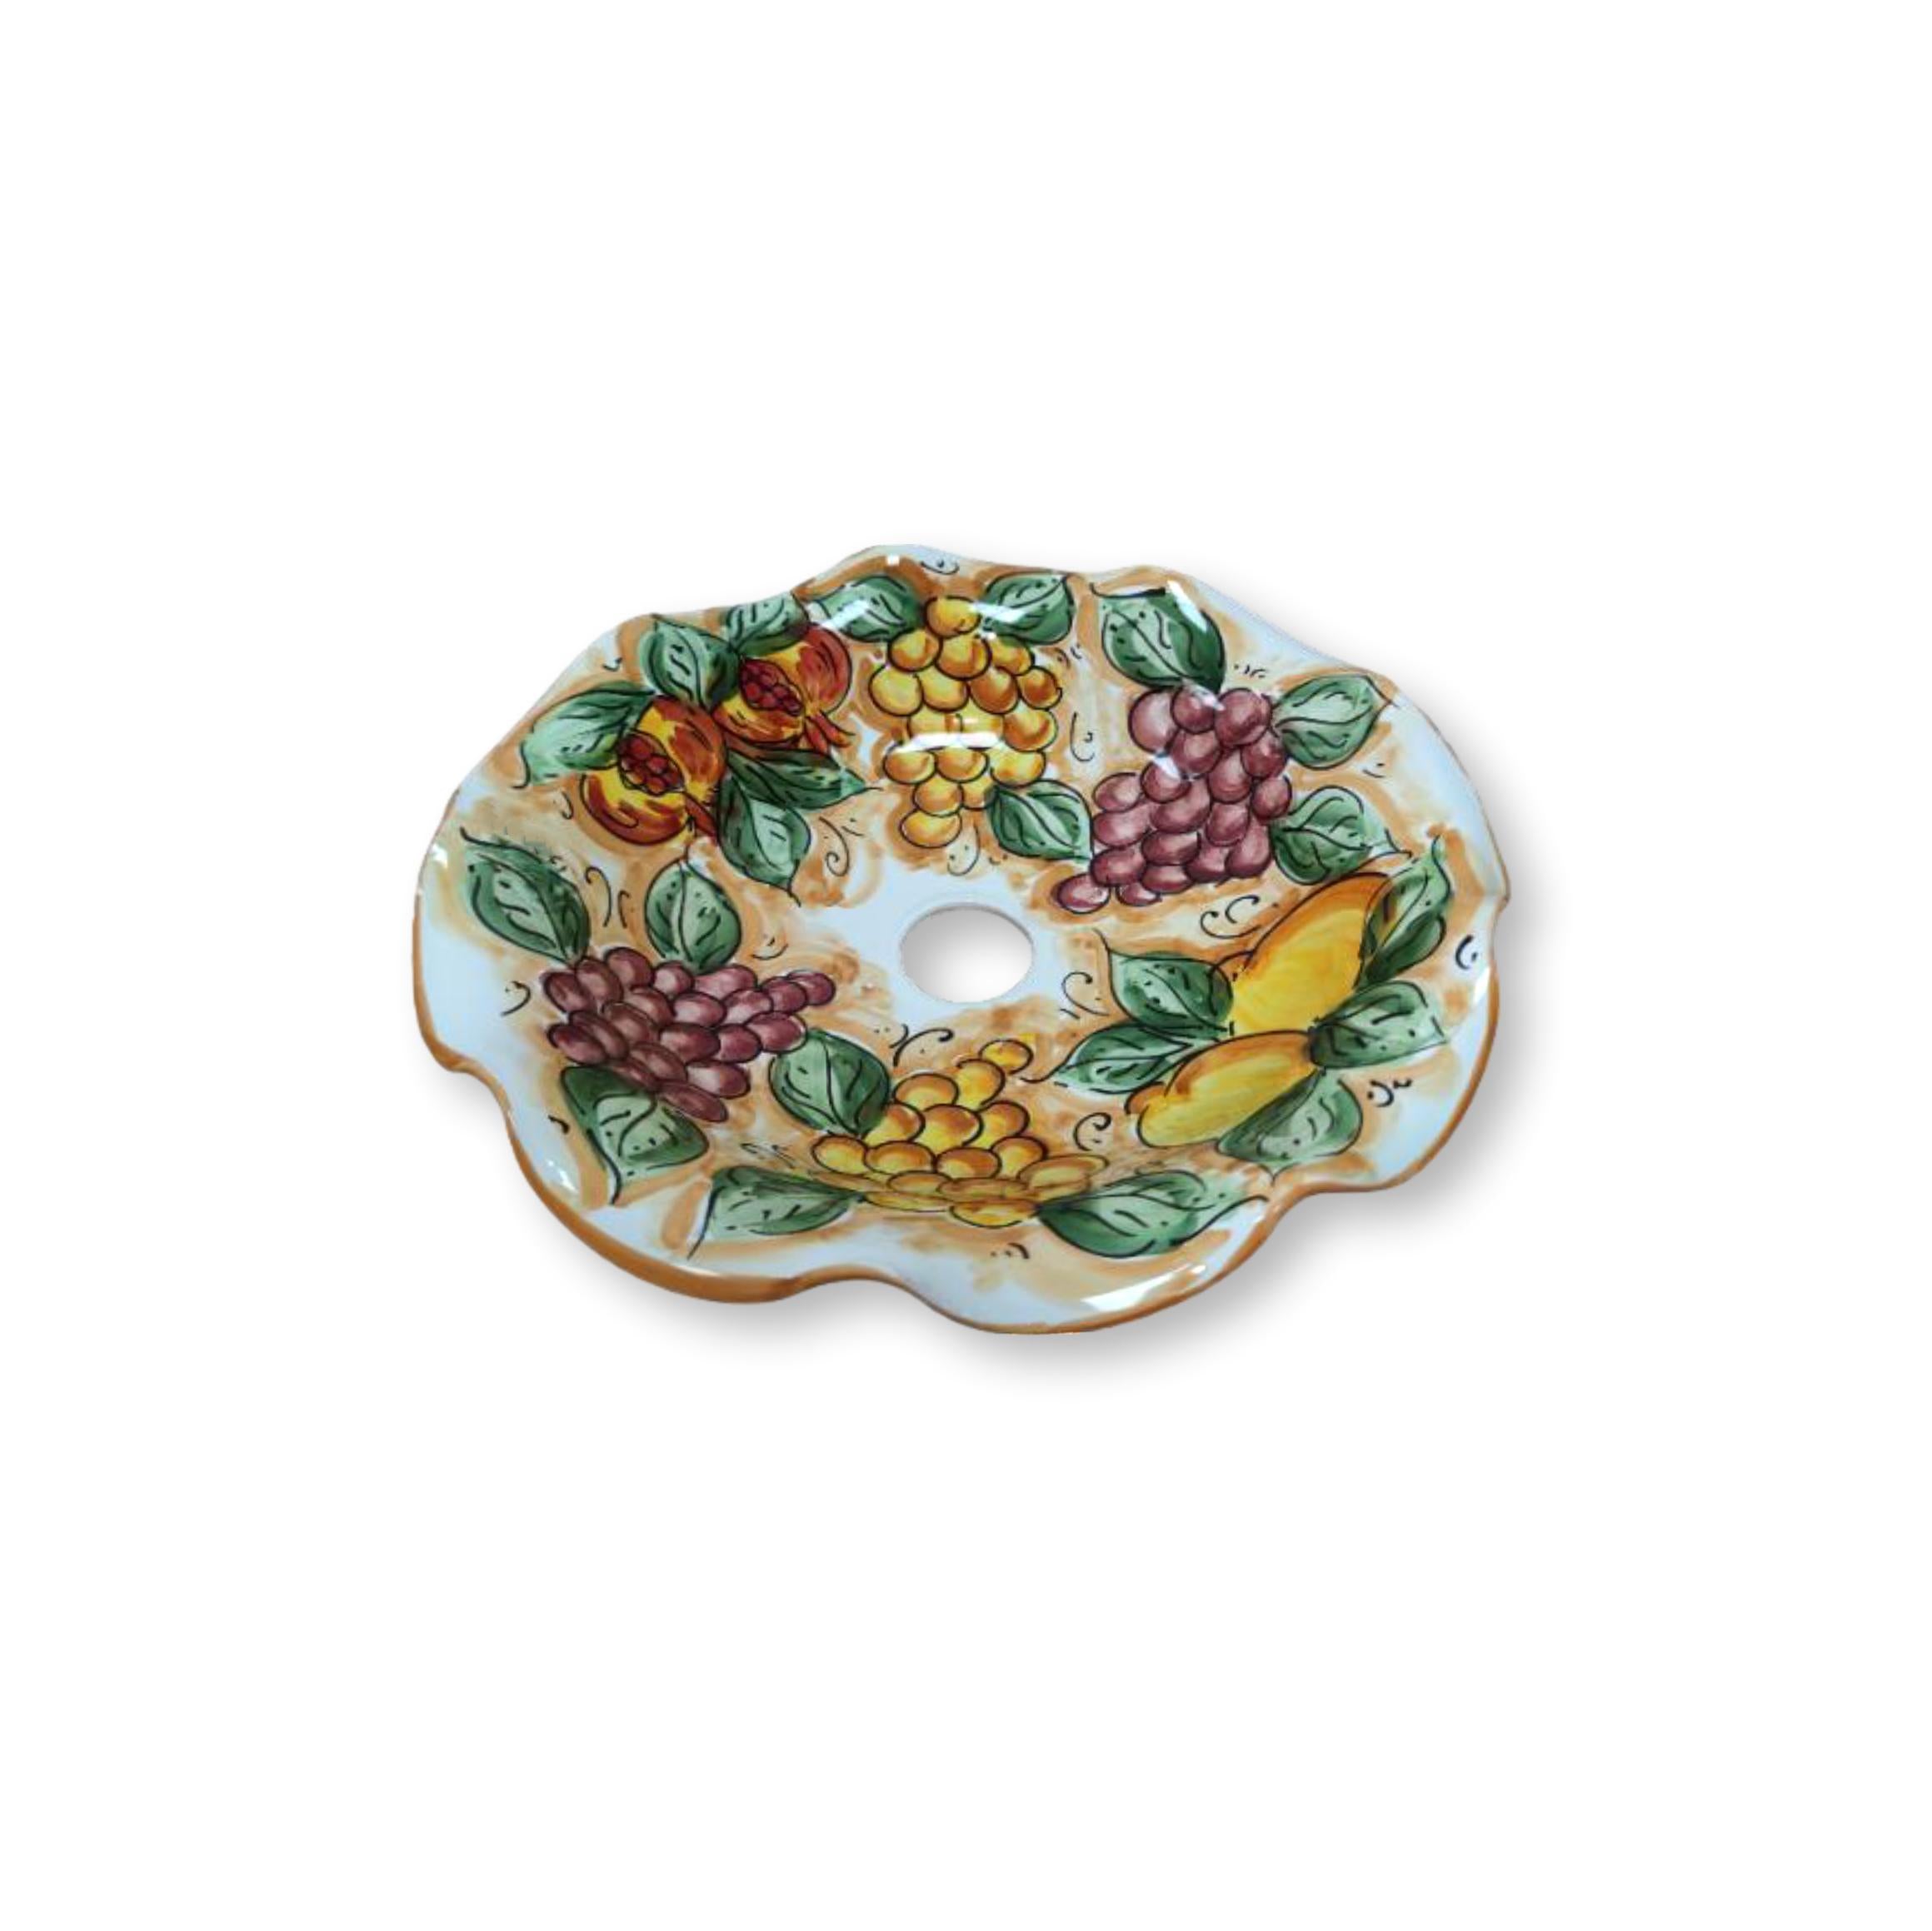 Lampadario in ceramica dipinto a mano - Ornato limoni, melograni e uva